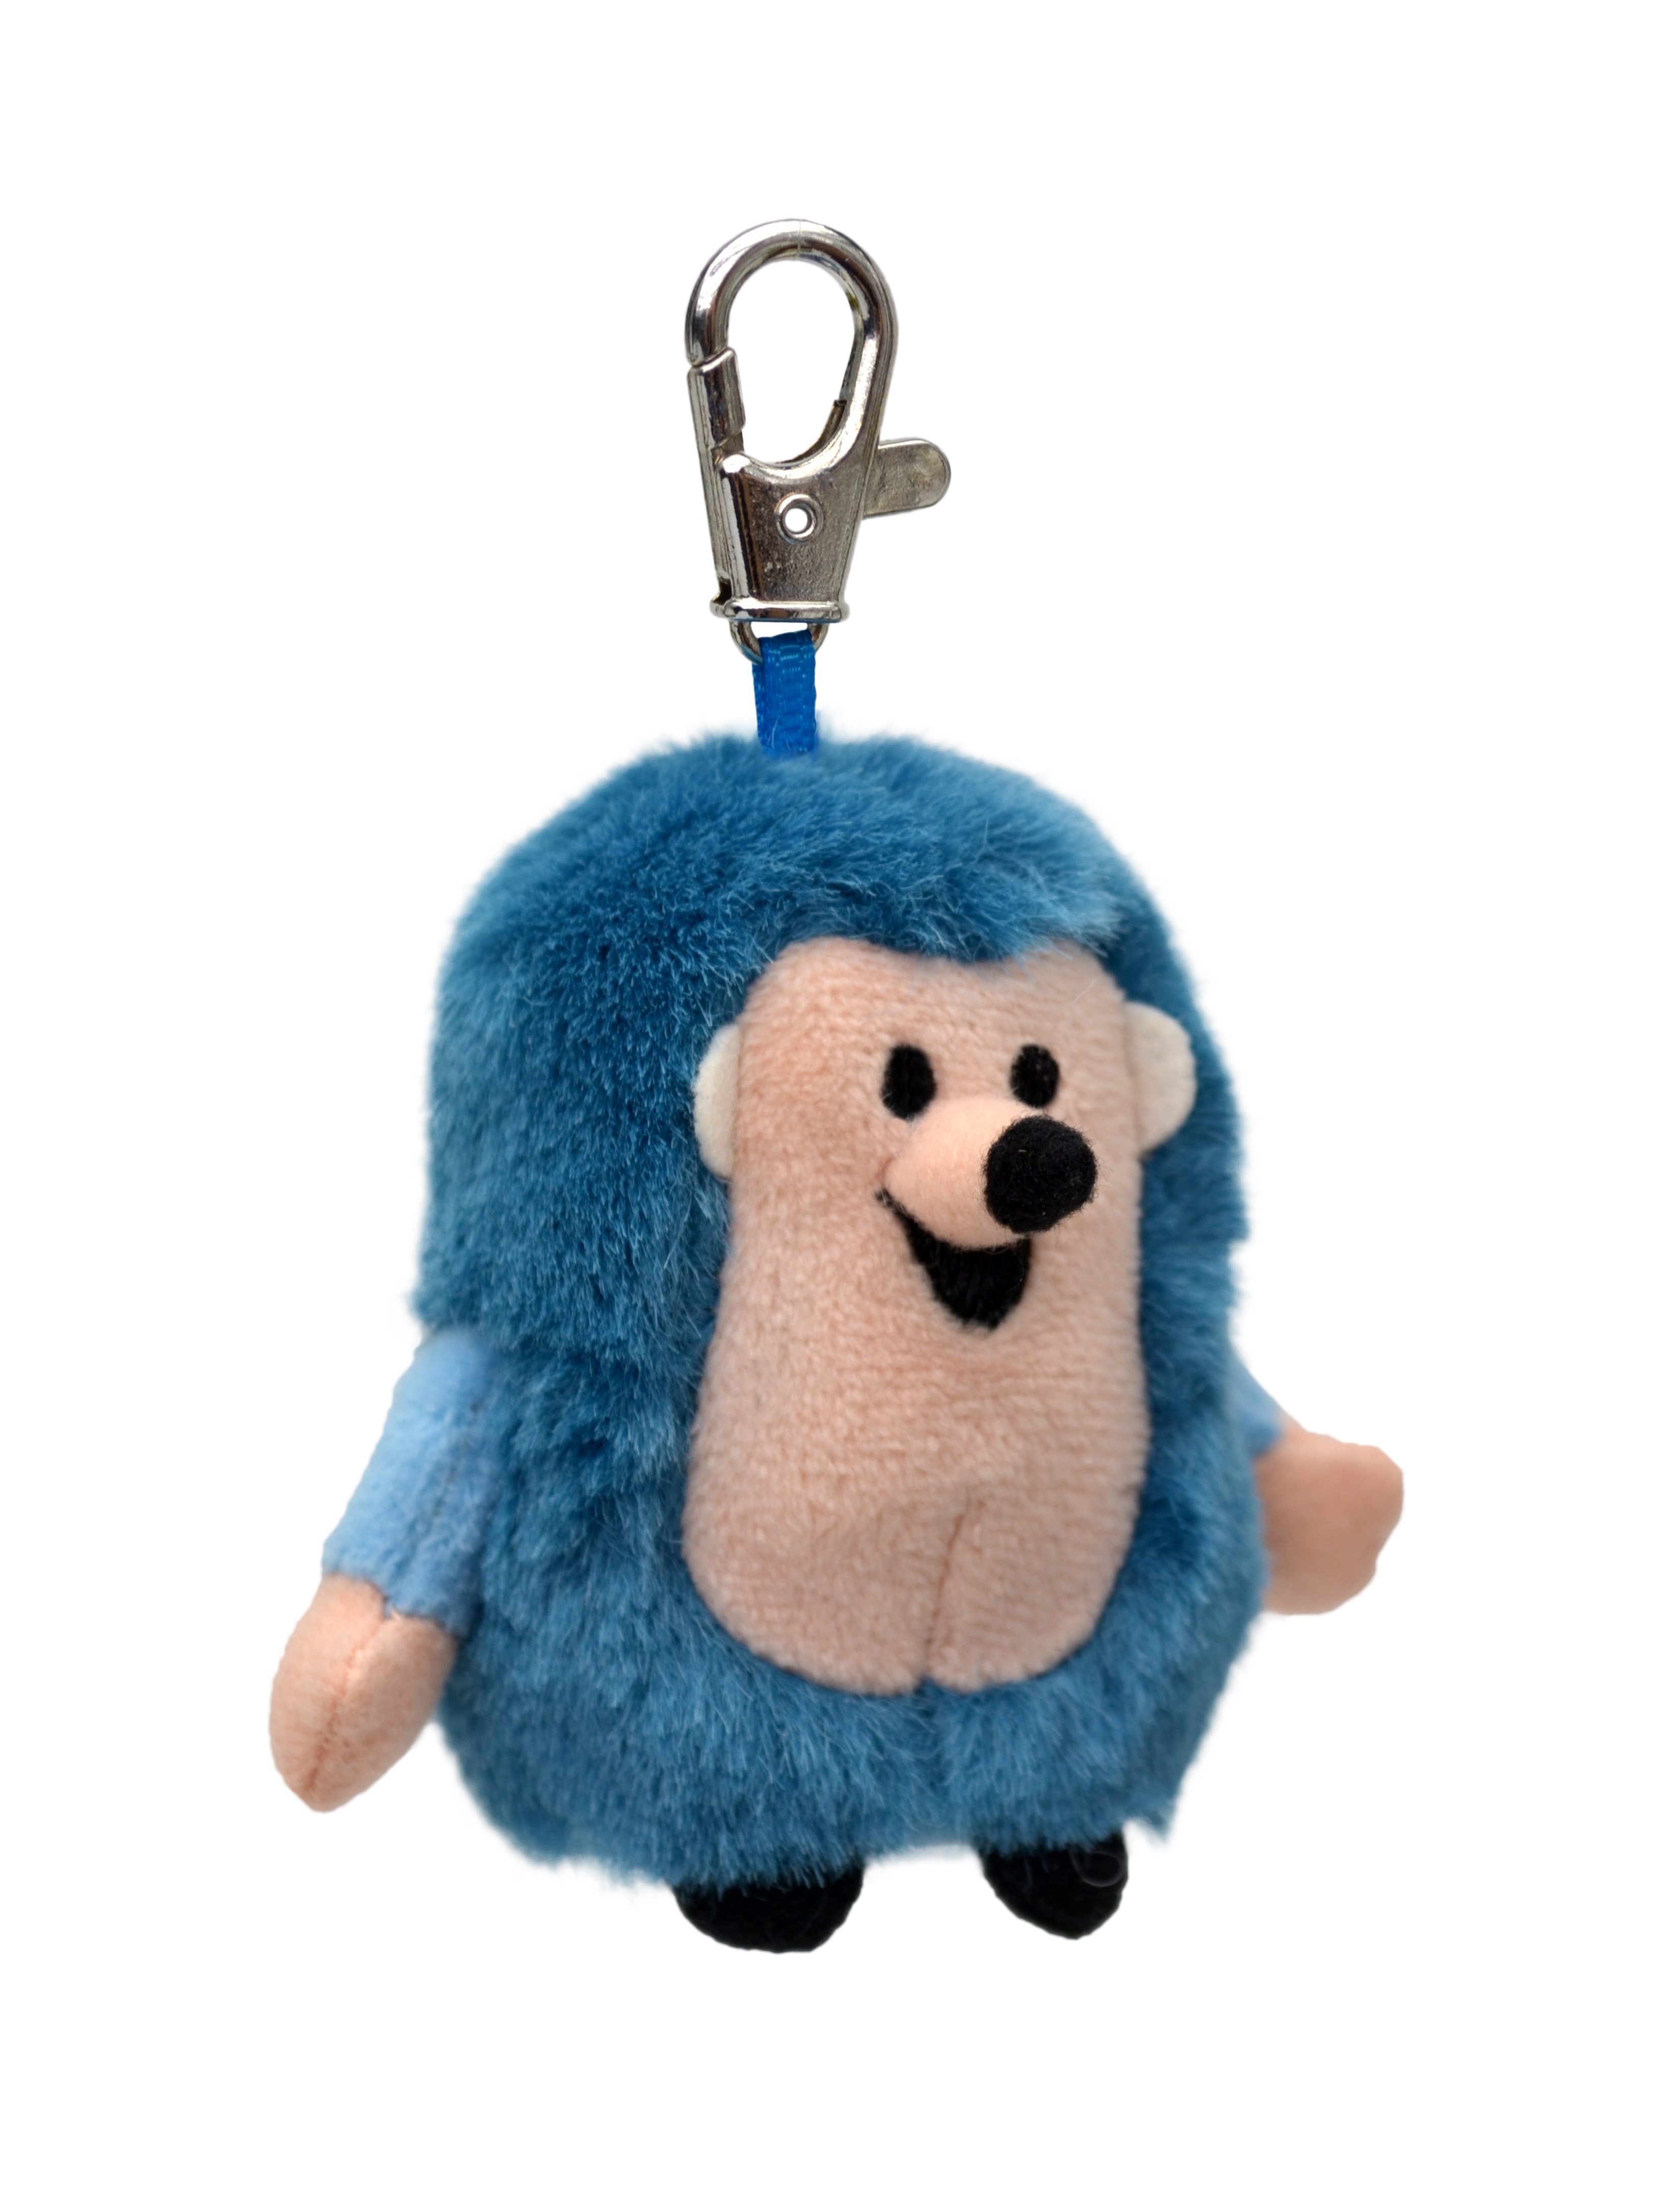 Plüschfigur Igel blau mini - Schlüsselanhänger, 8cm